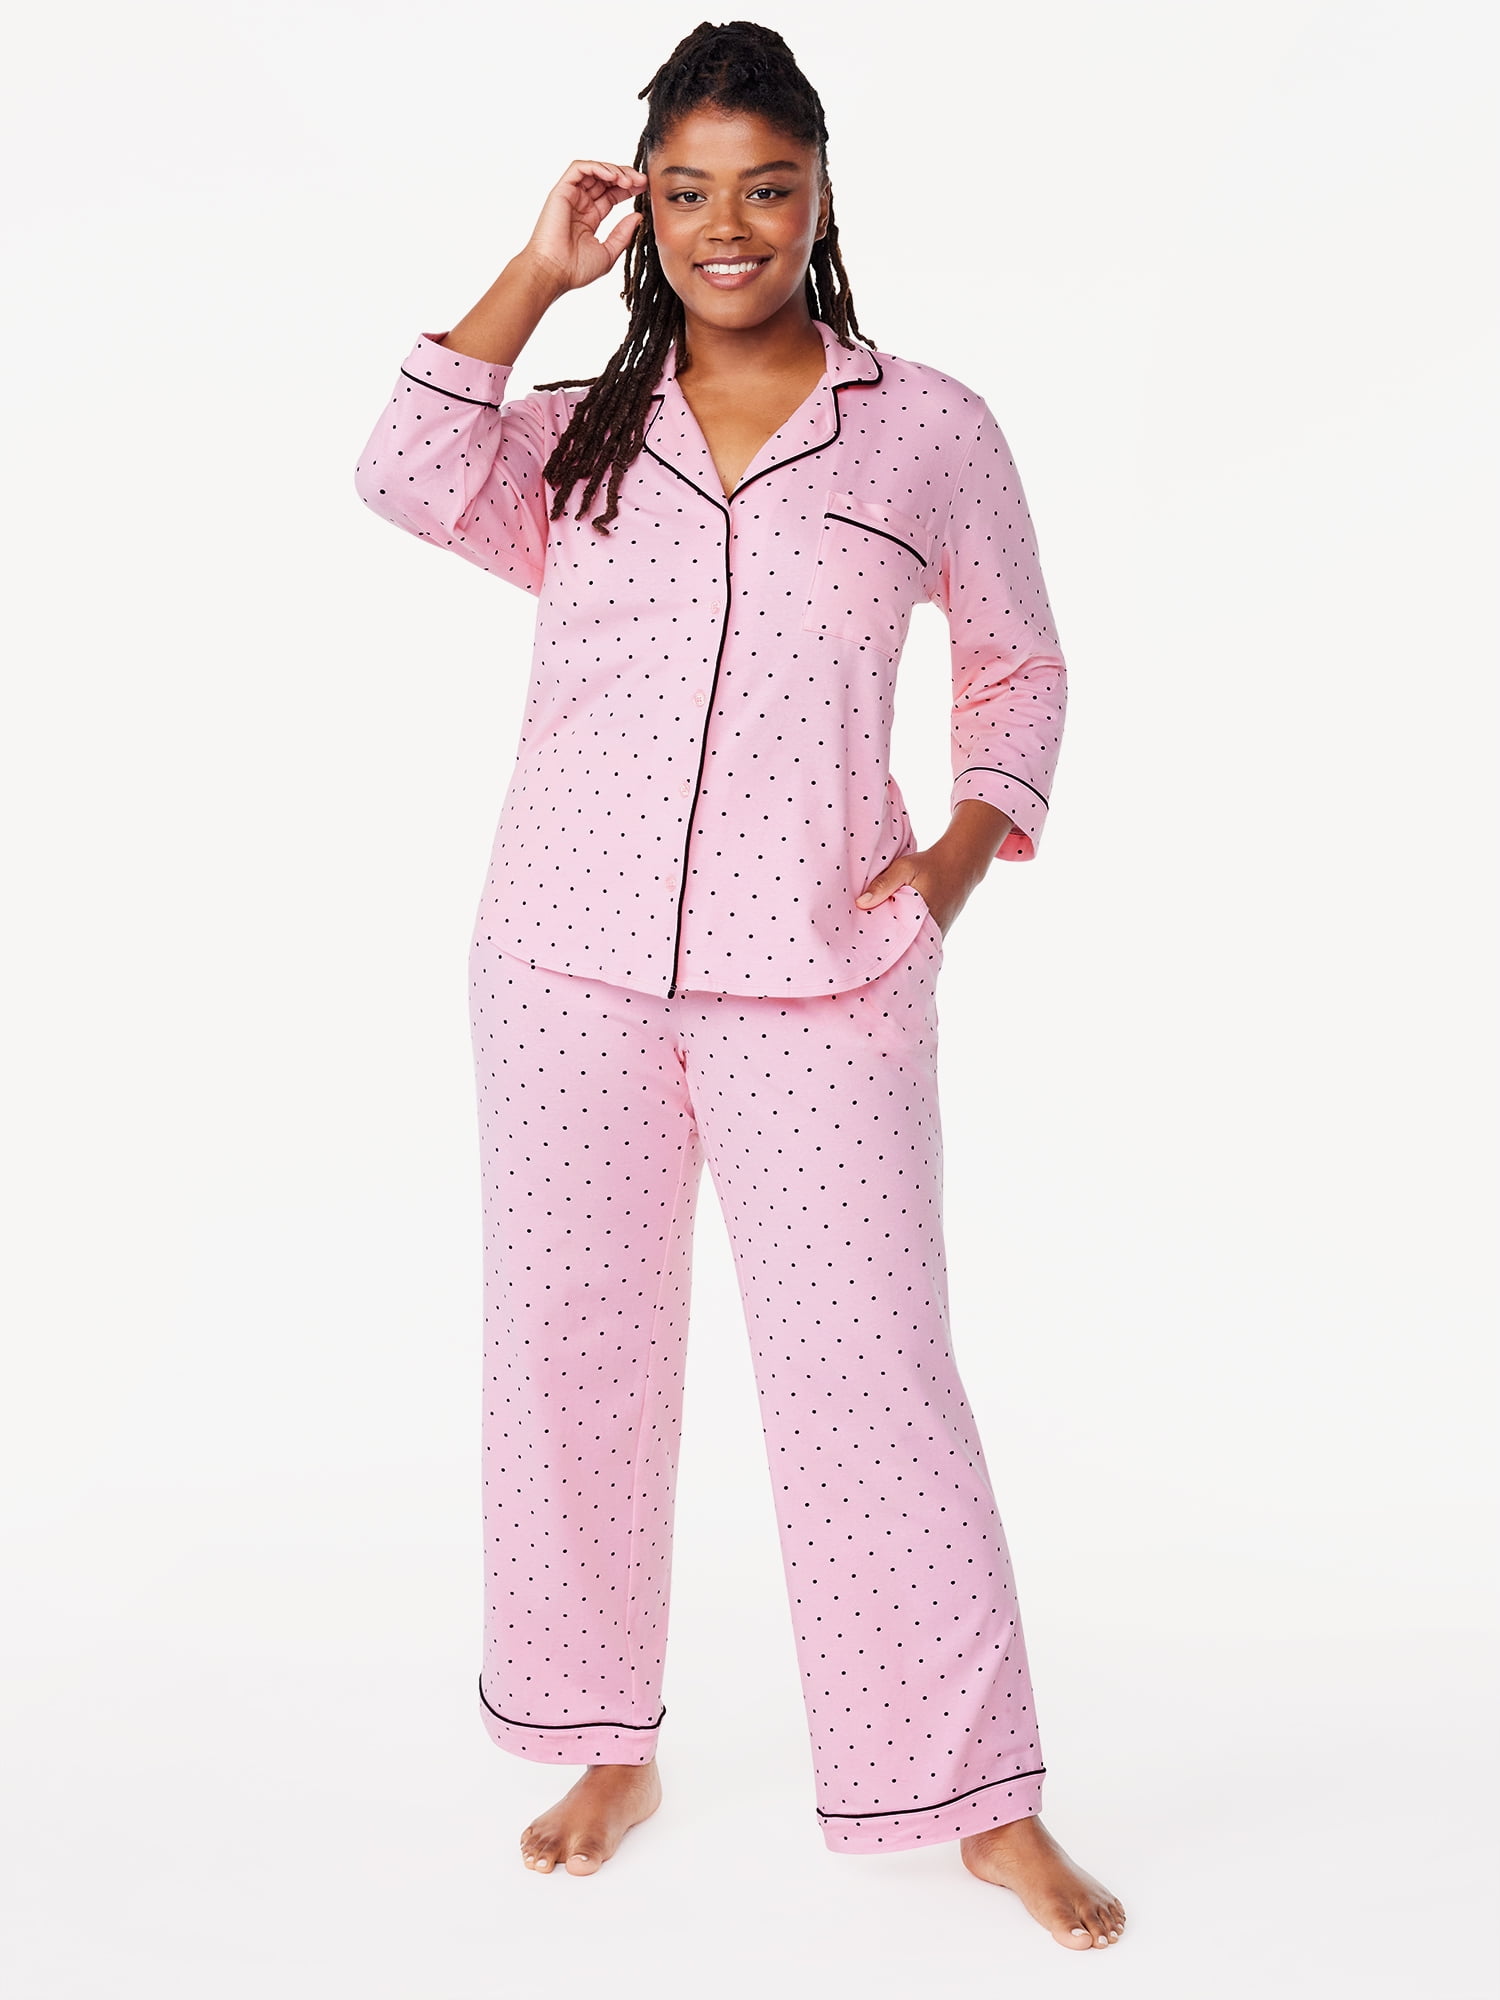 Joyspun Women's Cotton Blend Notch Collar Top and Pants Pajama Set